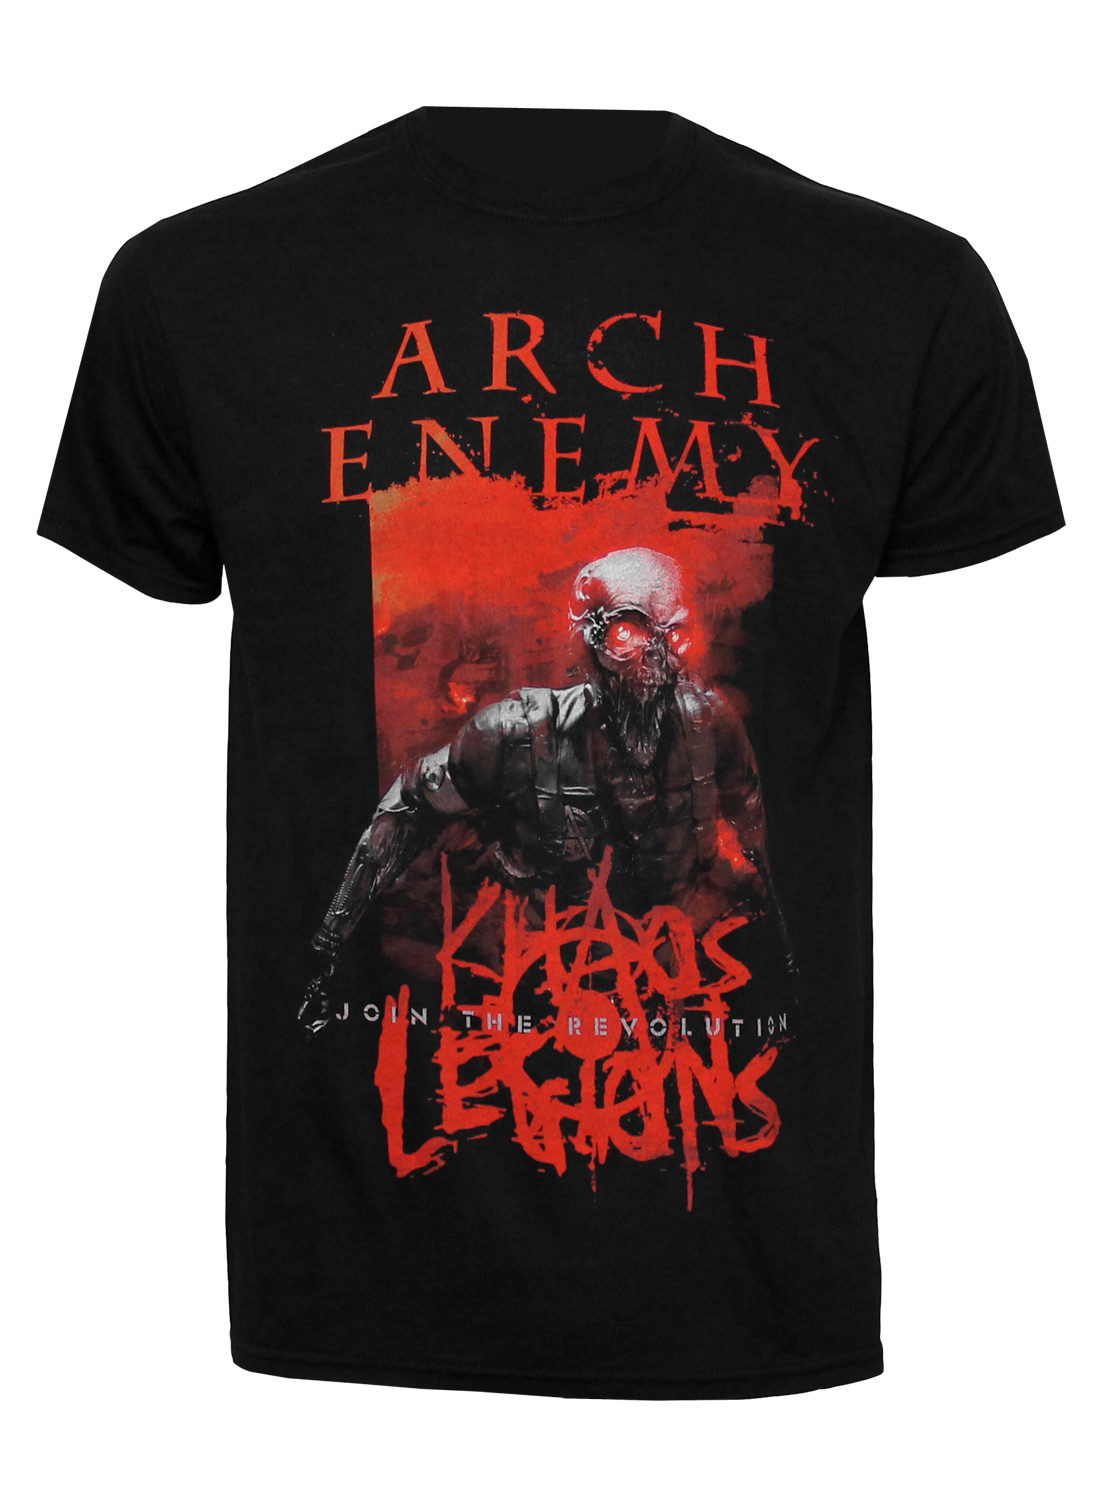 Arch Enemy Khaos Legions